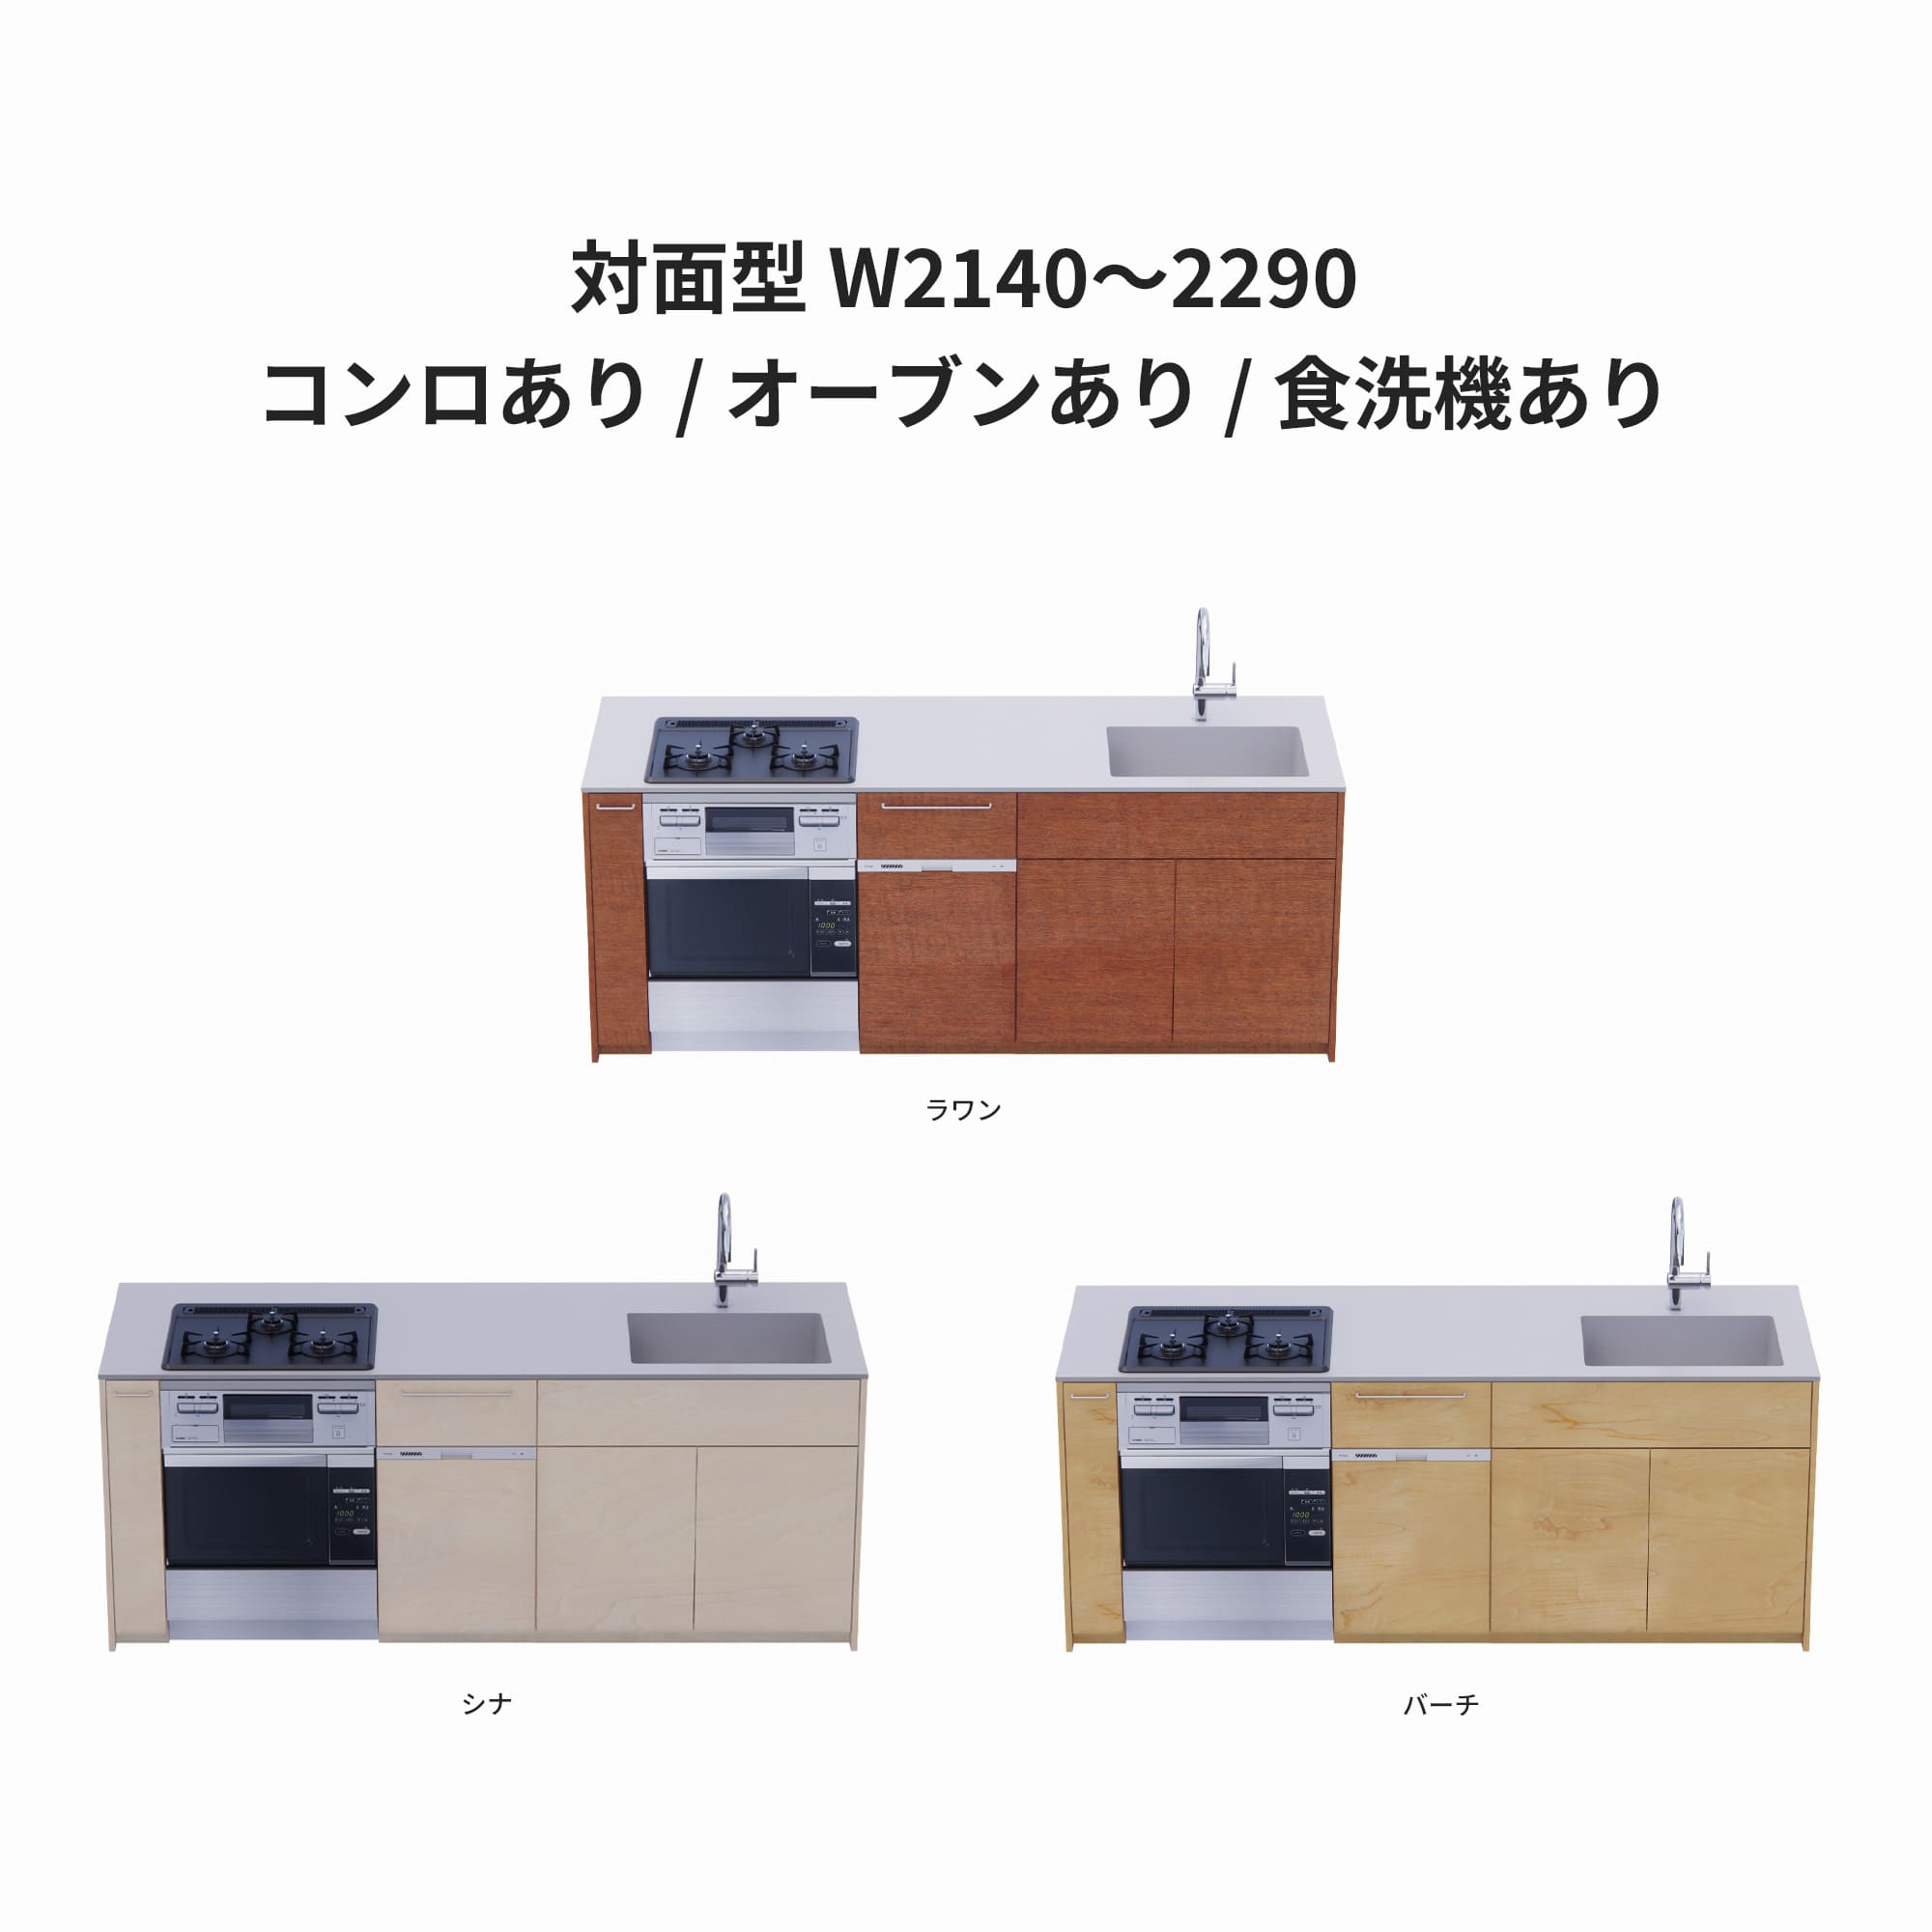 木製システムキッチン 対面型 W2140～2290・コンロあり / オーブンあり / 食洗機あり KB-KC022-40-G183 ラワン・シナ・バーチが選択できます